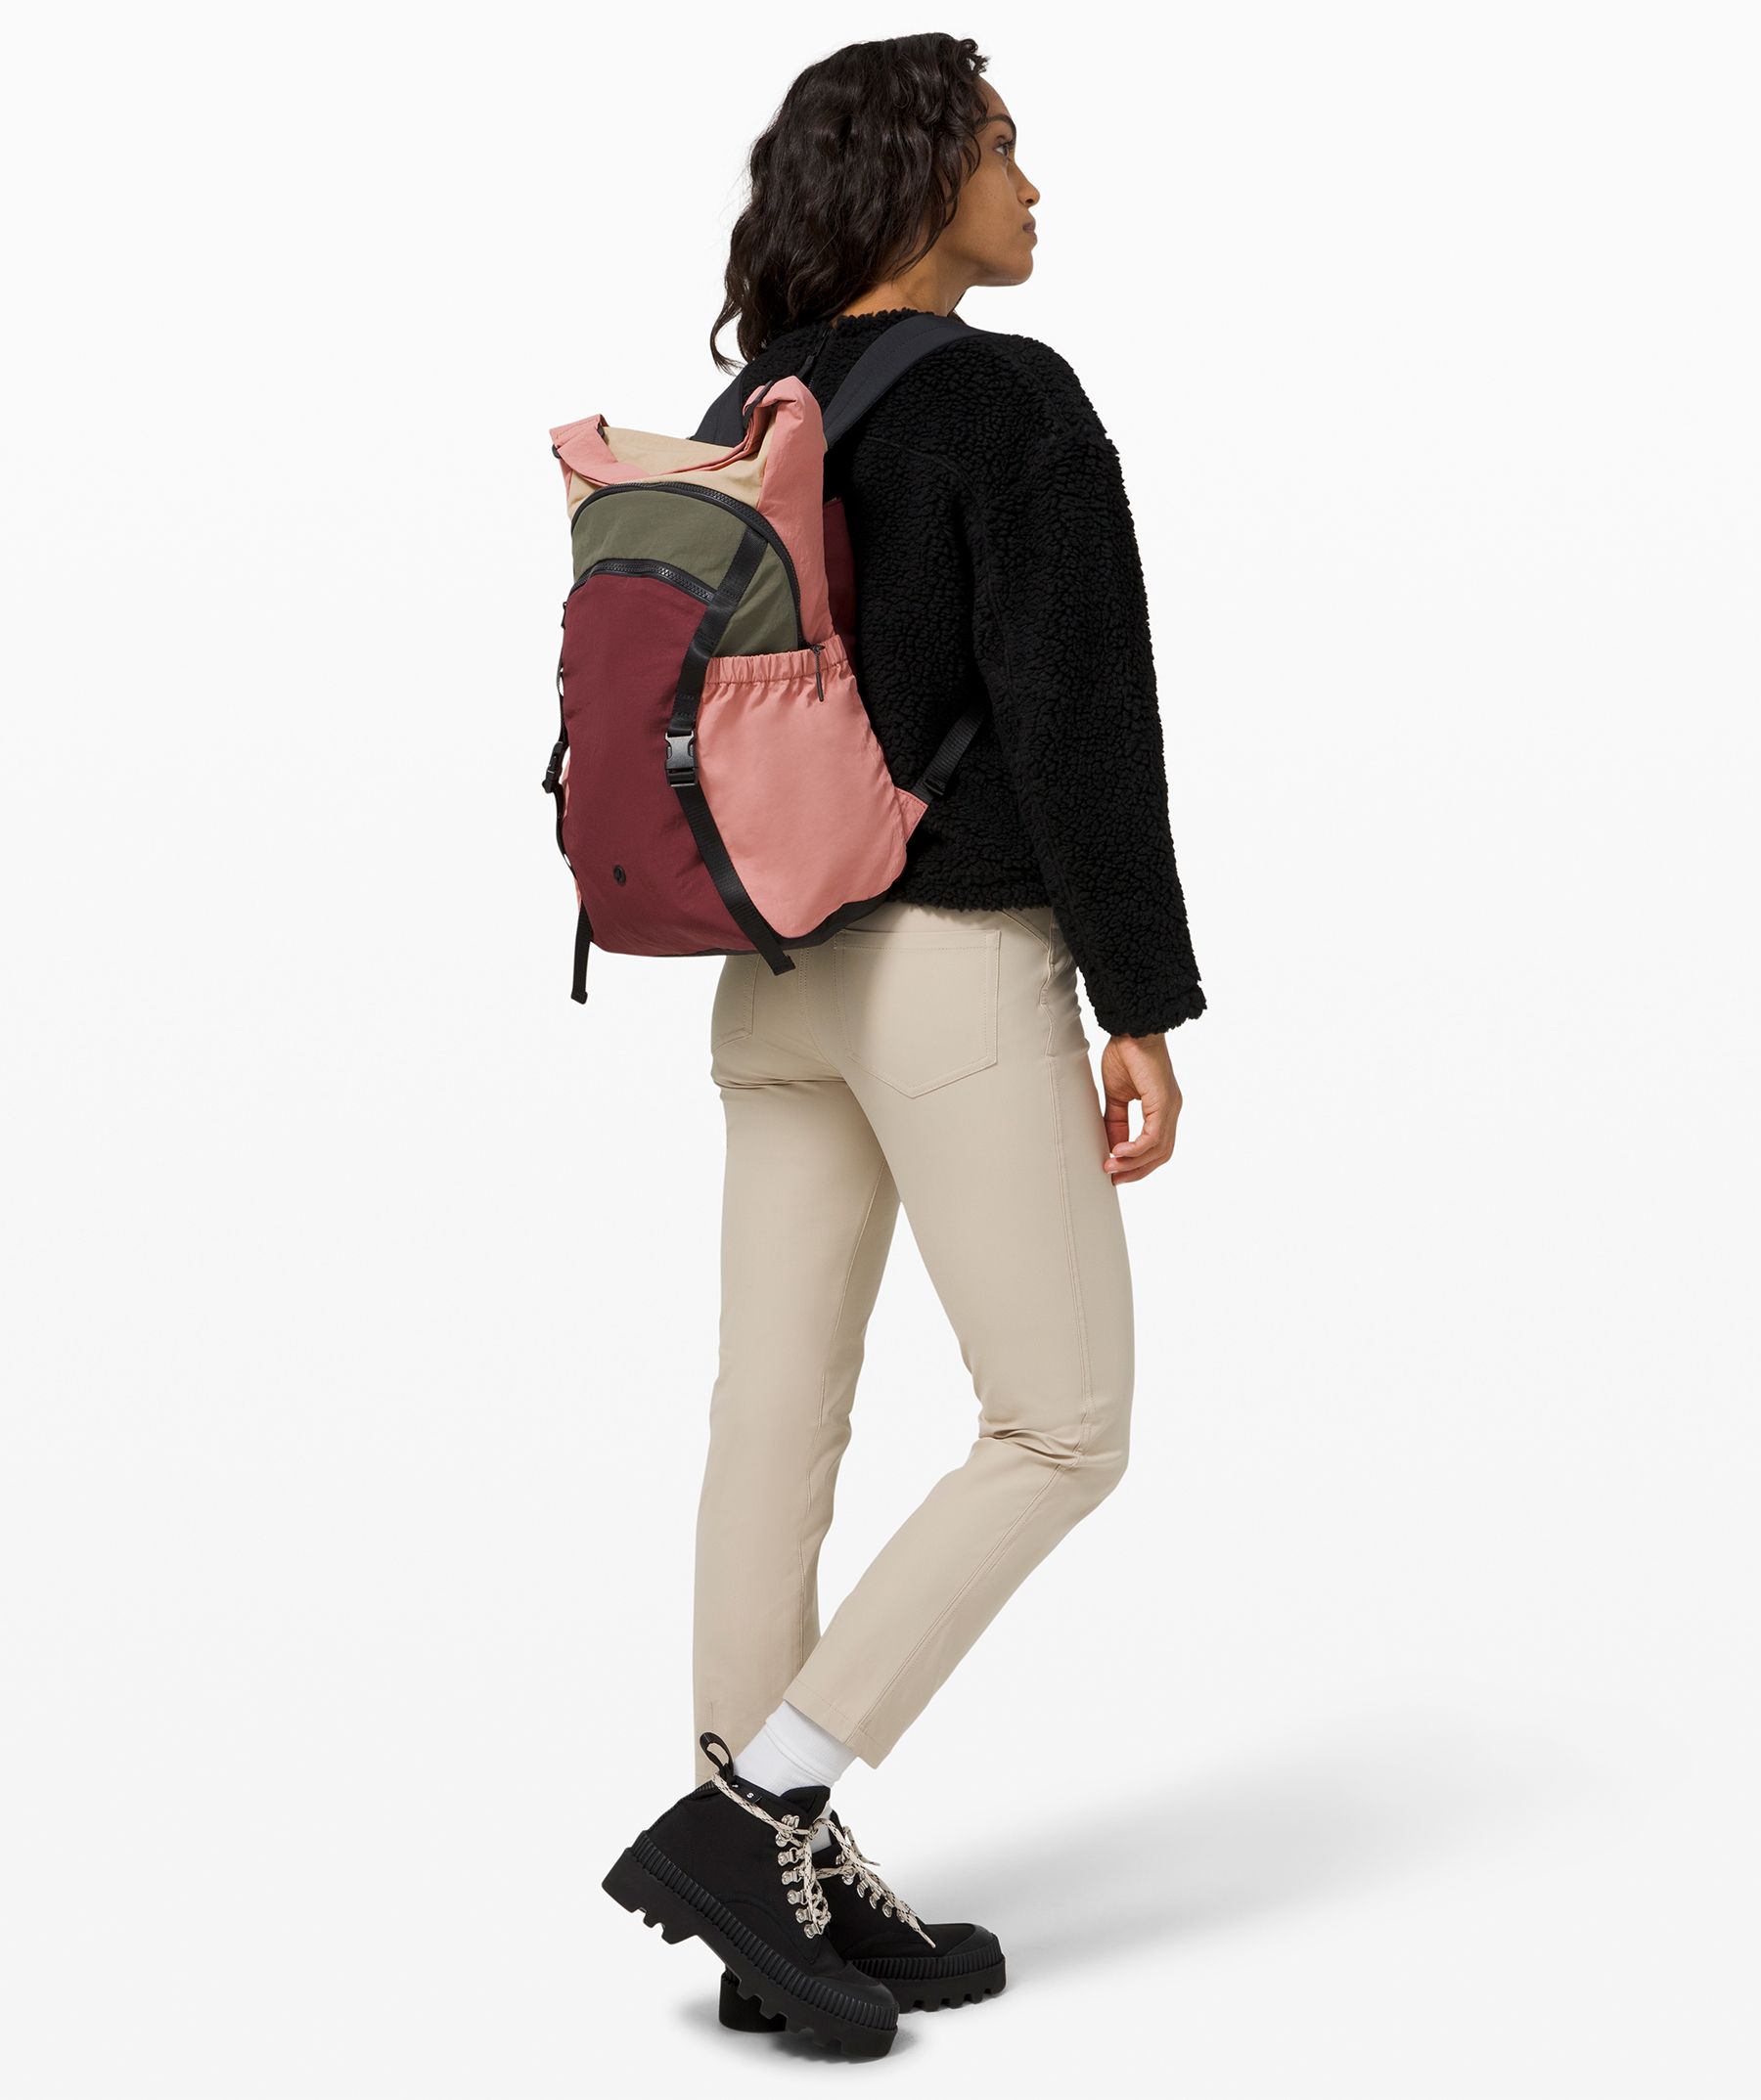 lululemon backpack women's